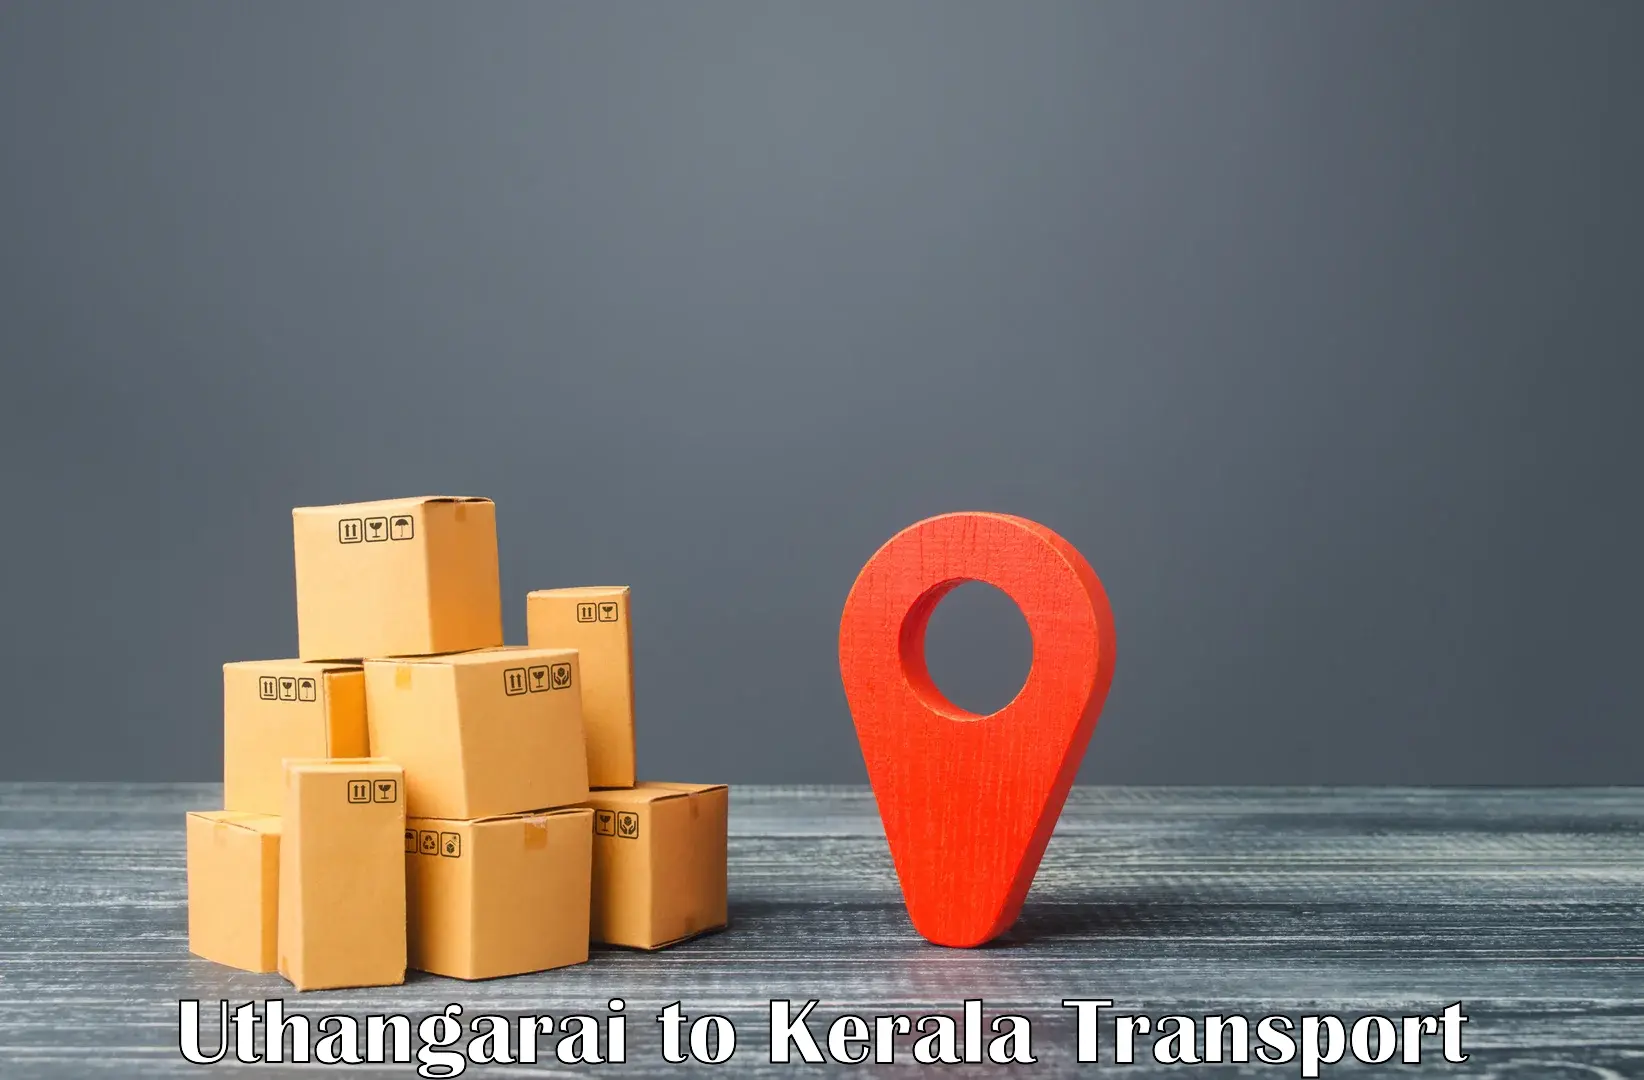 Furniture transport service Uthangarai to Manjeshwar